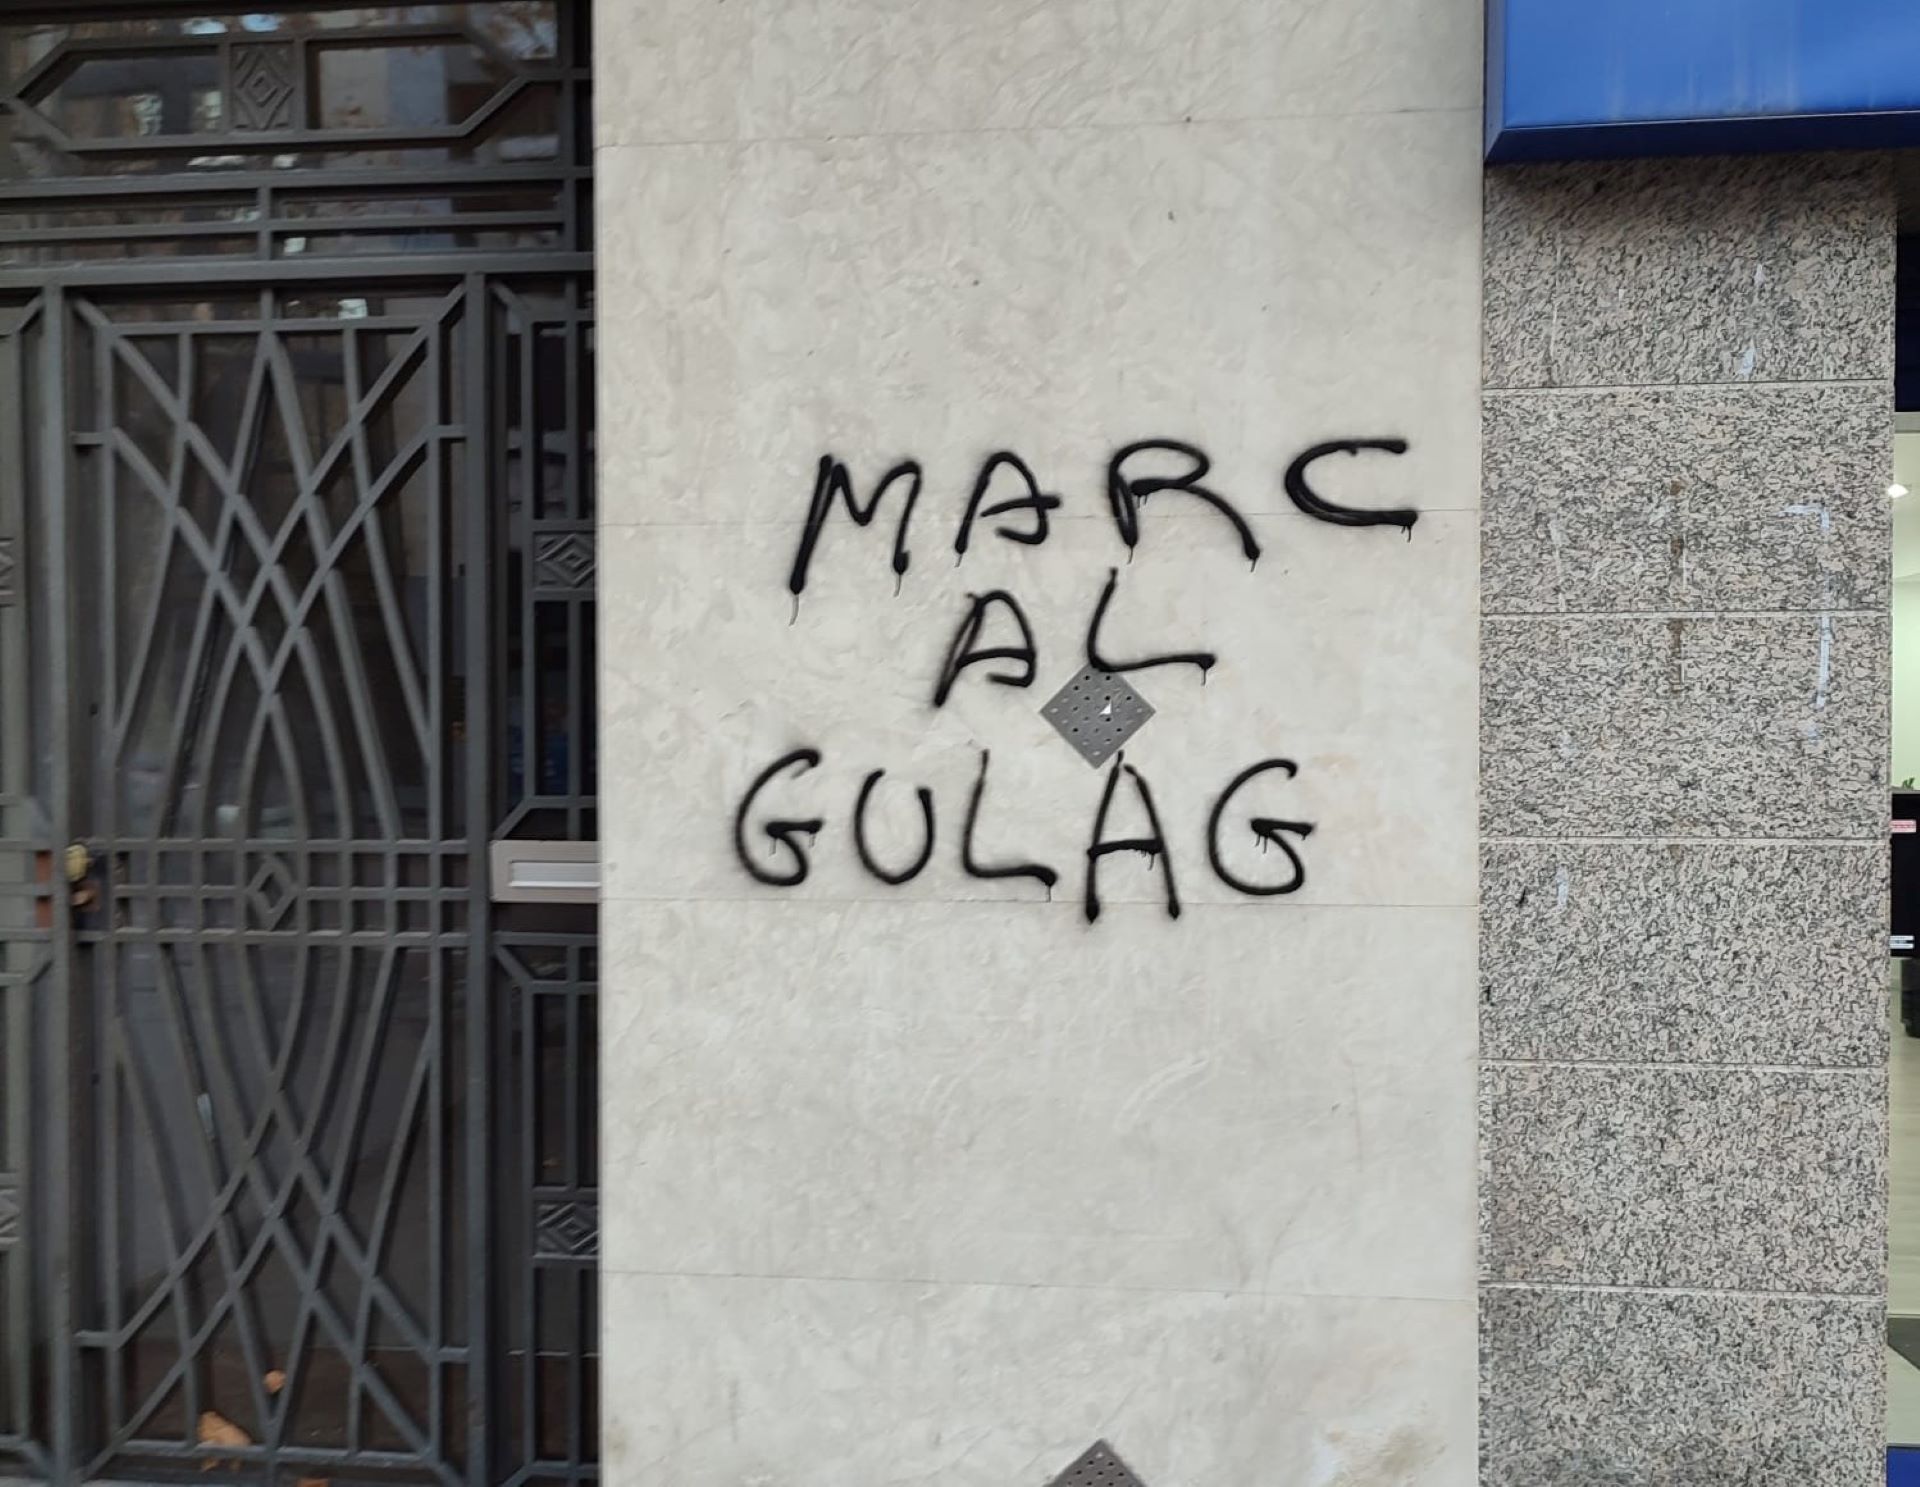 Aparece una pintada amenazadora contra el alcalde de Igualada, Marc Castells